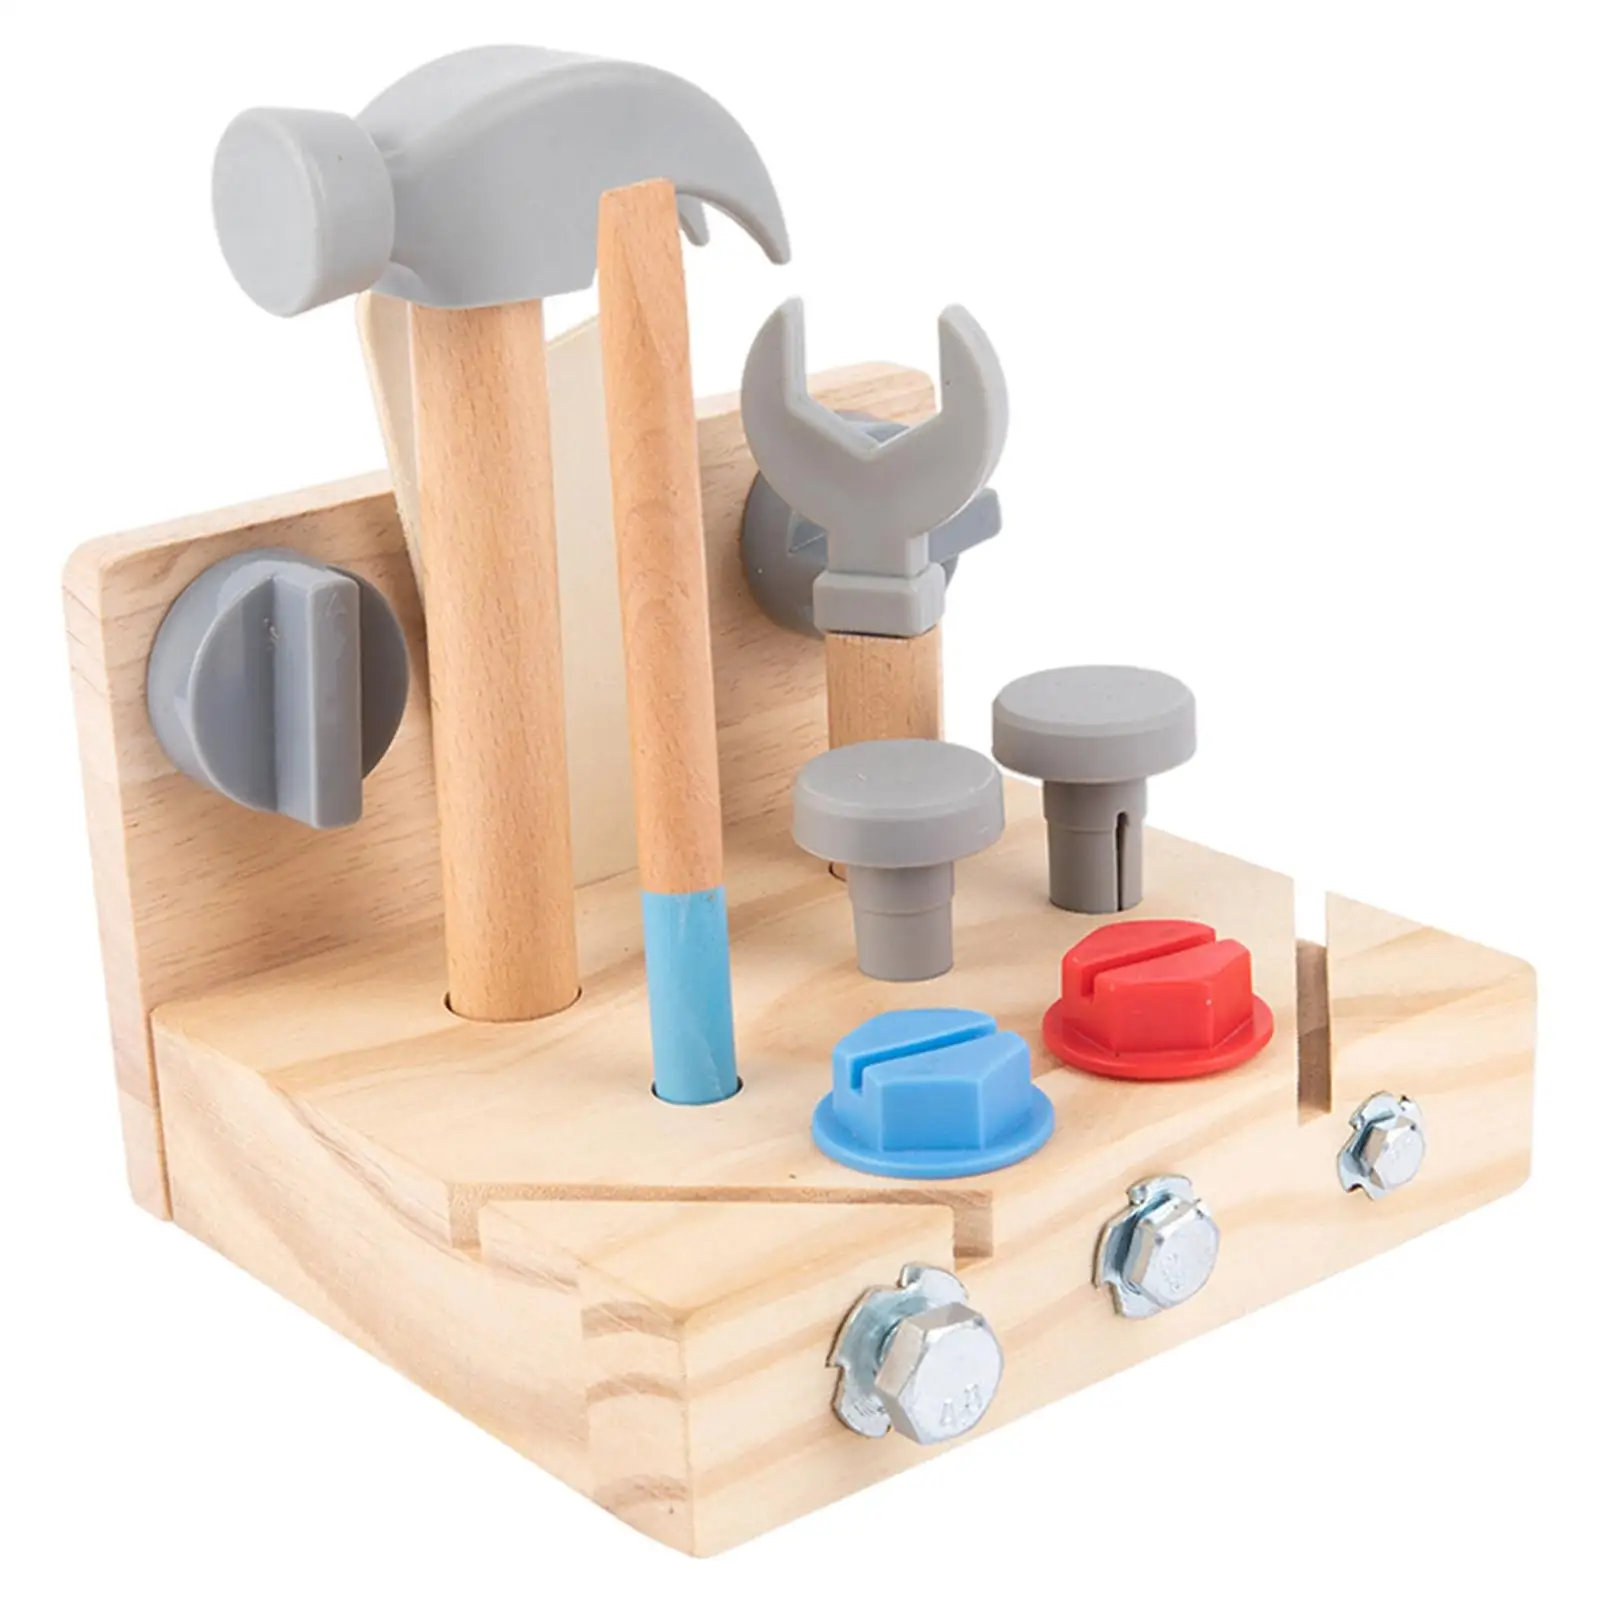 

Игрушка Монтессори для малышей, развивающая Базовая игрушка для мелкой моторики, практичная сенсорная игрушка, деревянная игрушка